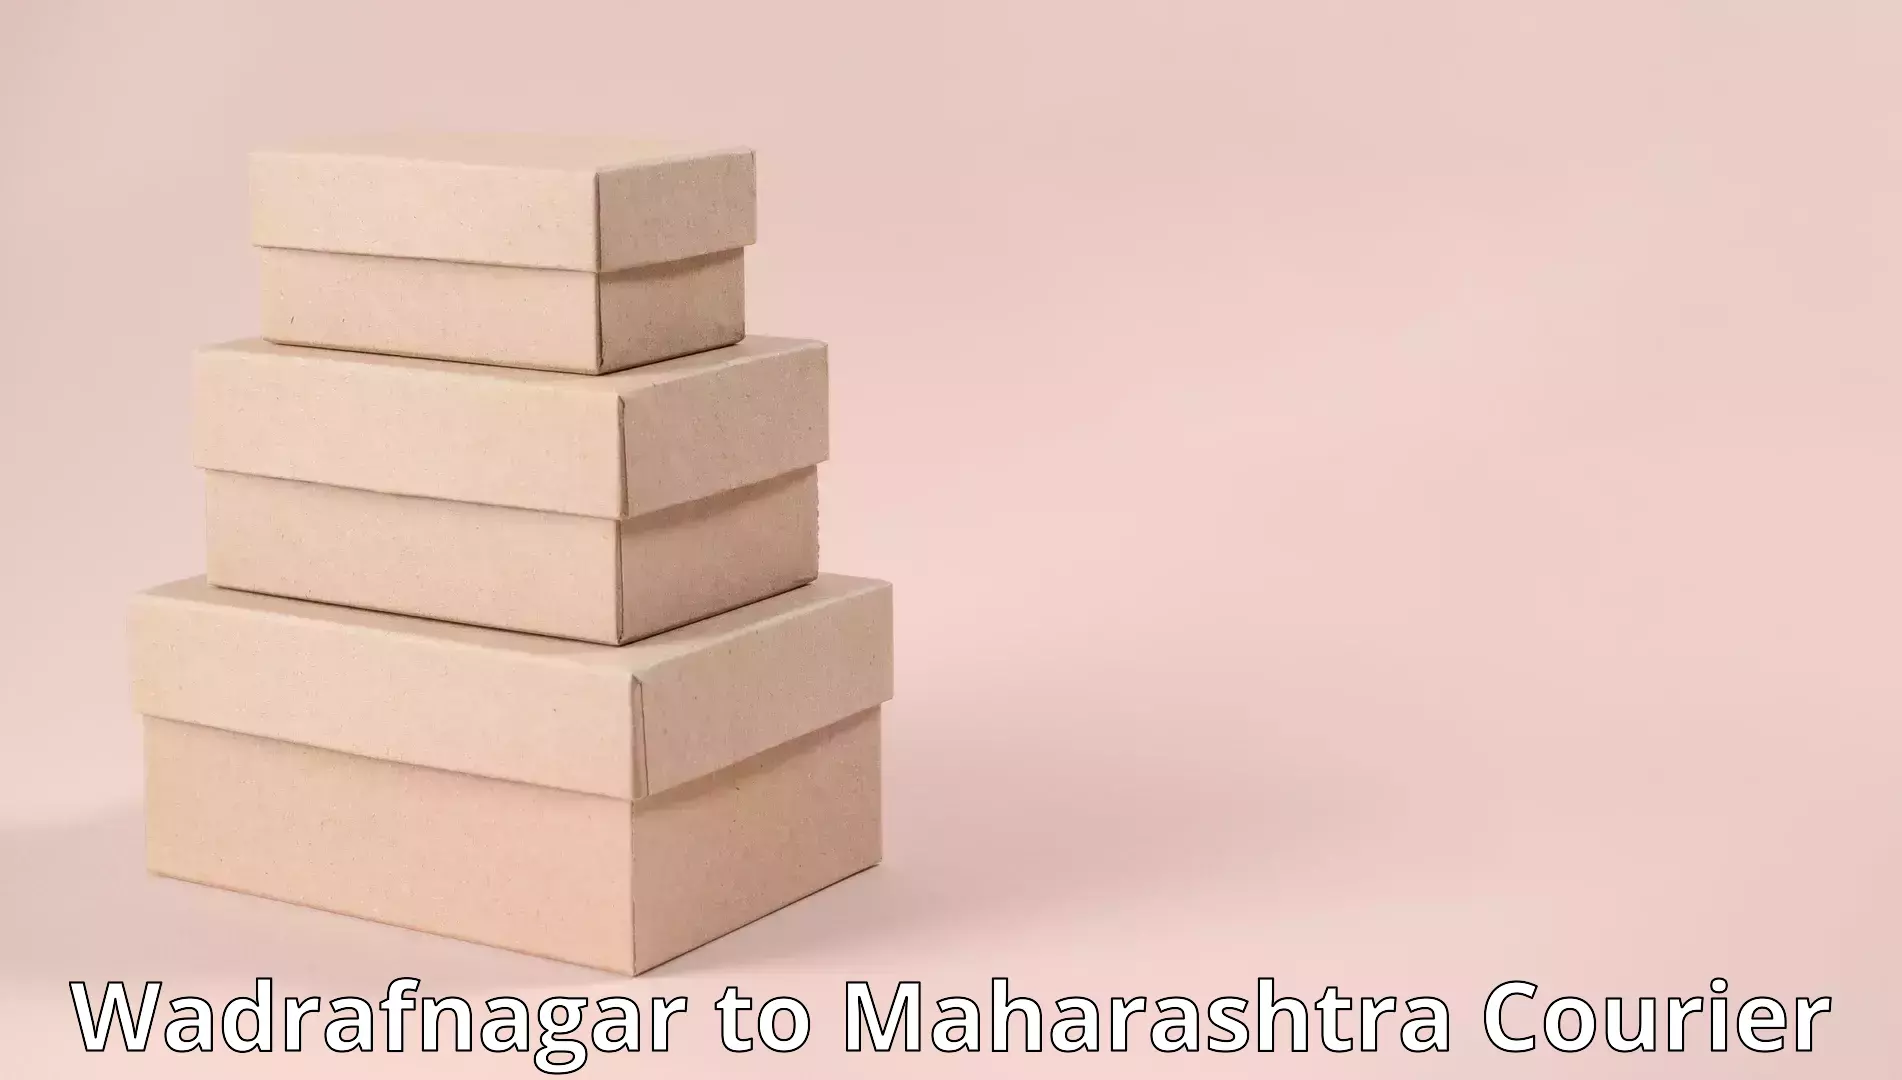 Efficient moving strategies Wadrafnagar to Mul